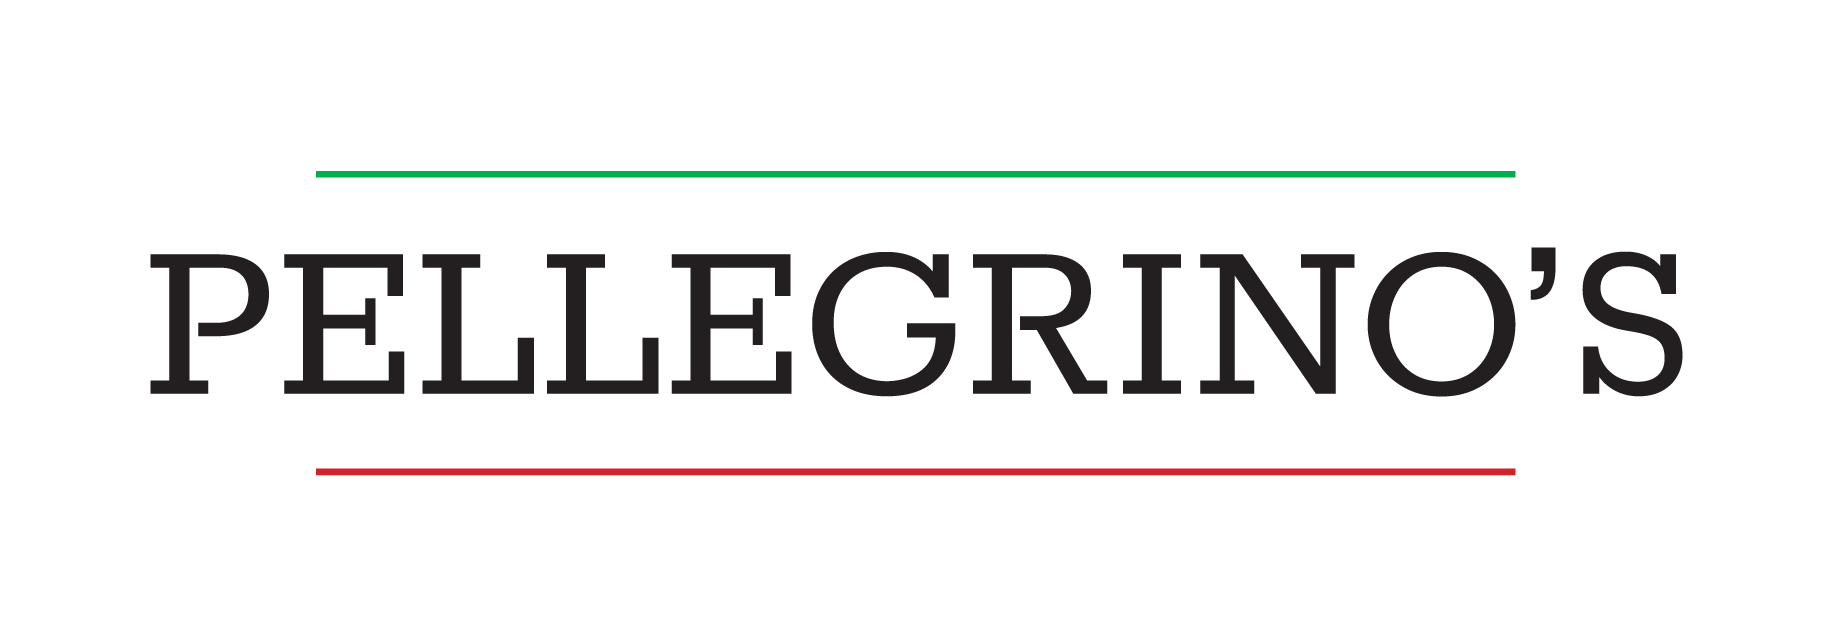 Pellegrino's Group LLC